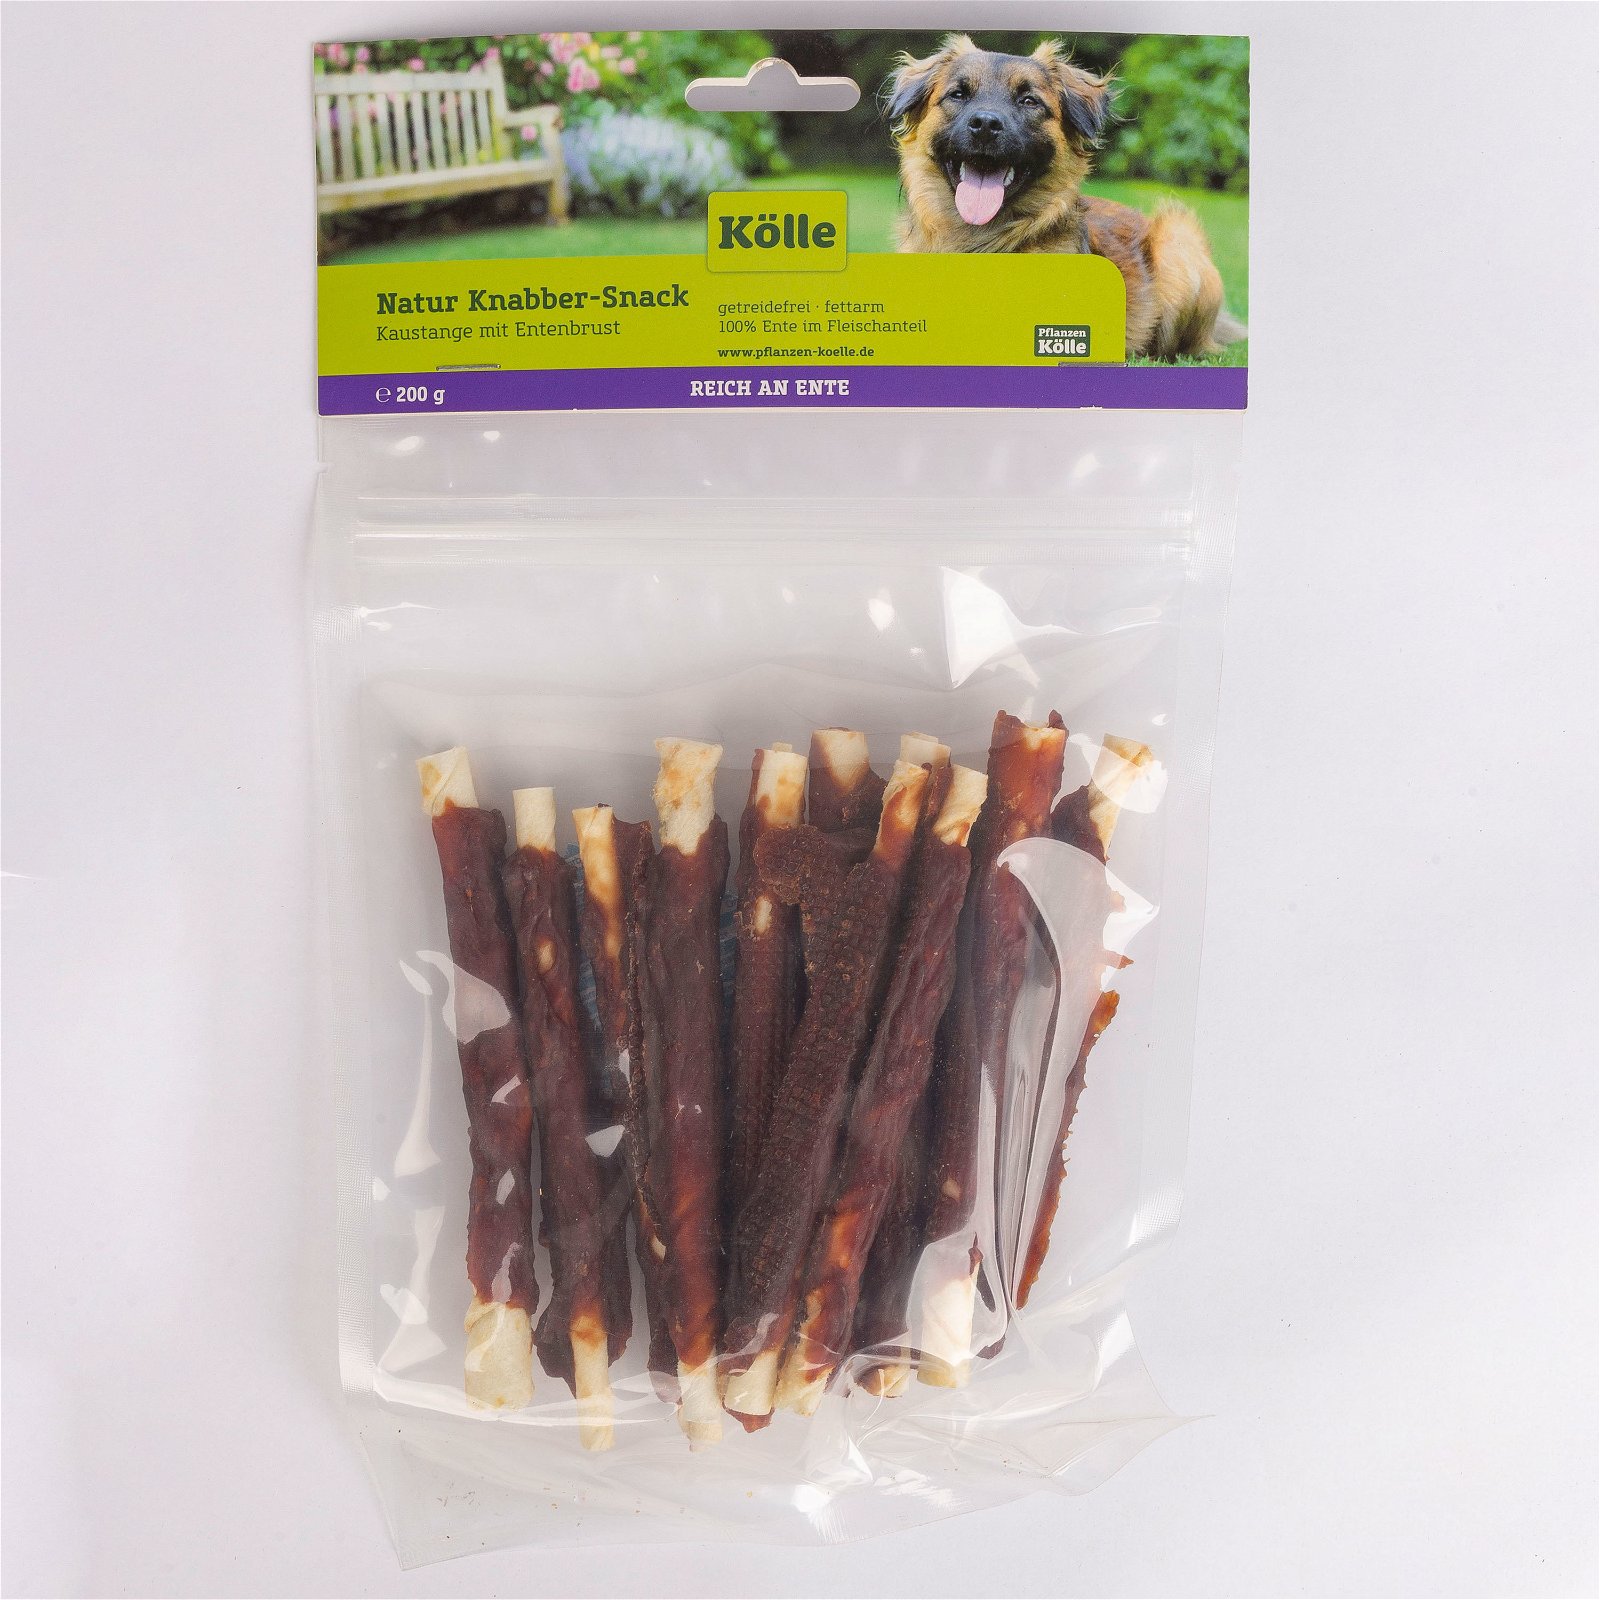 Natur Knabber-Snack für Hunde, Kaustange mit Entenbrust, 200 g